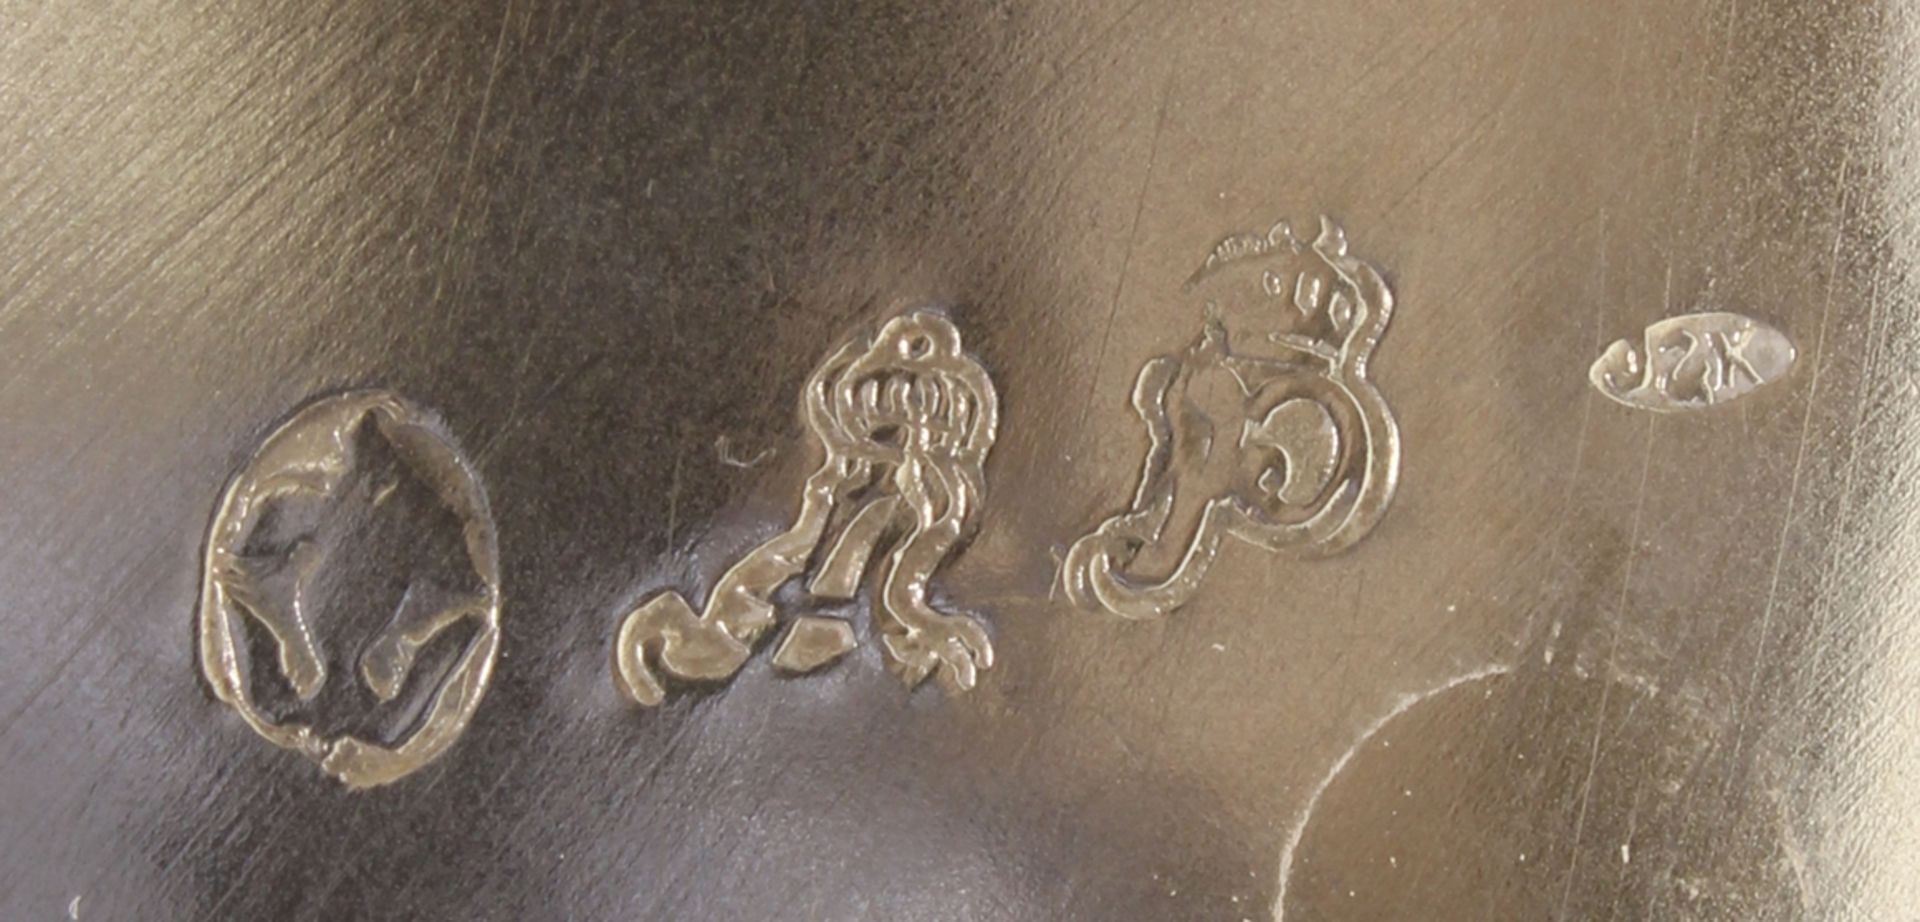 Gießkanne, Silber, Marken, Reliefdekor mit Amor und Taubenpaar, 15.5 cm hoch, ca. 220 g, geringe Ge - Bild 2 aus 2